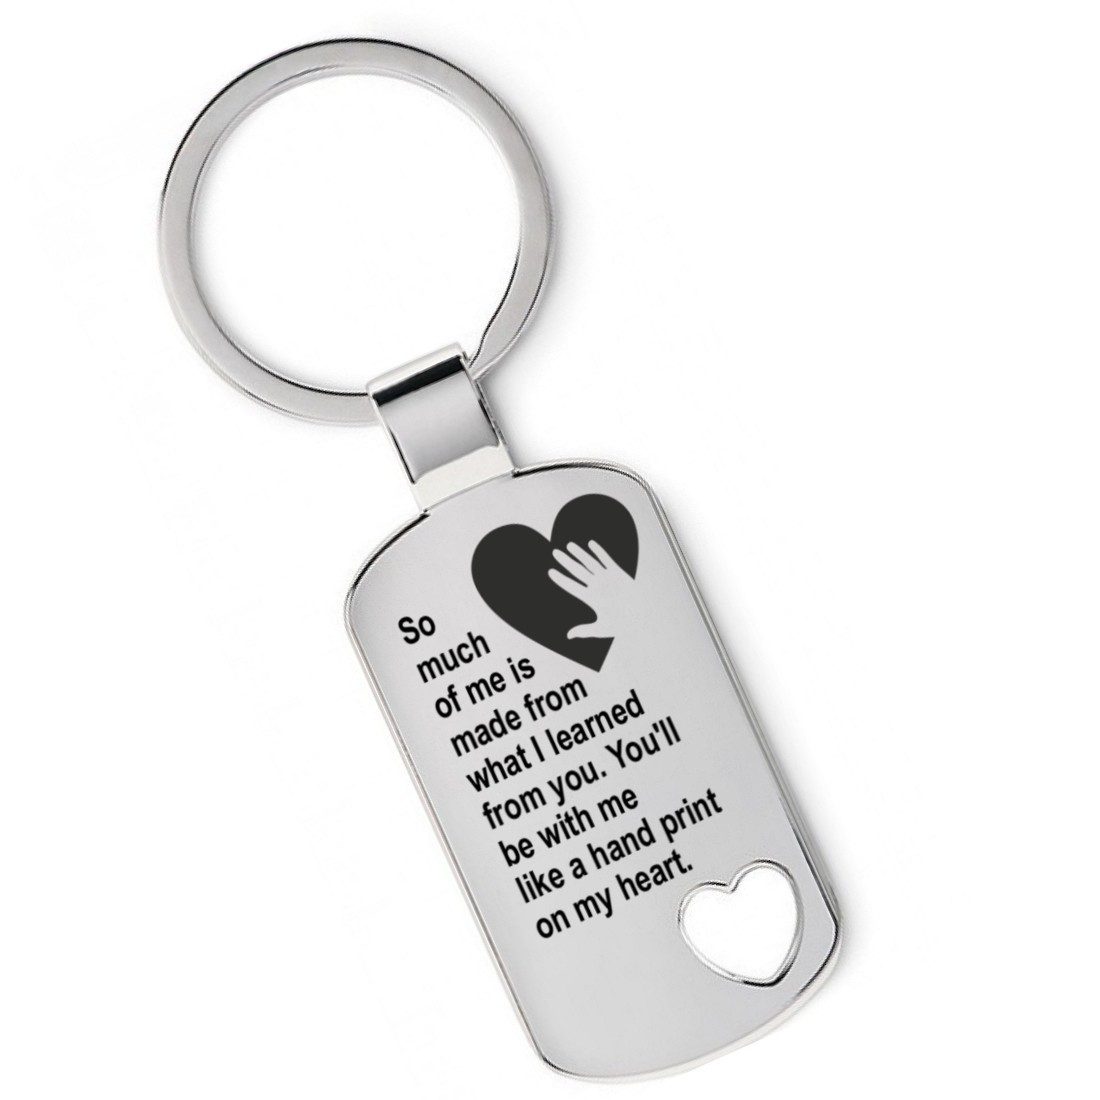 Lieblingsmensch Schlüsselanhänger Handprint on my heart - ein tolles Geschenk & Glücksbringer (Schlüsselanhänger mit Gravur, inklusive Schlüsselring), Robuste und filigrane Lasergravur